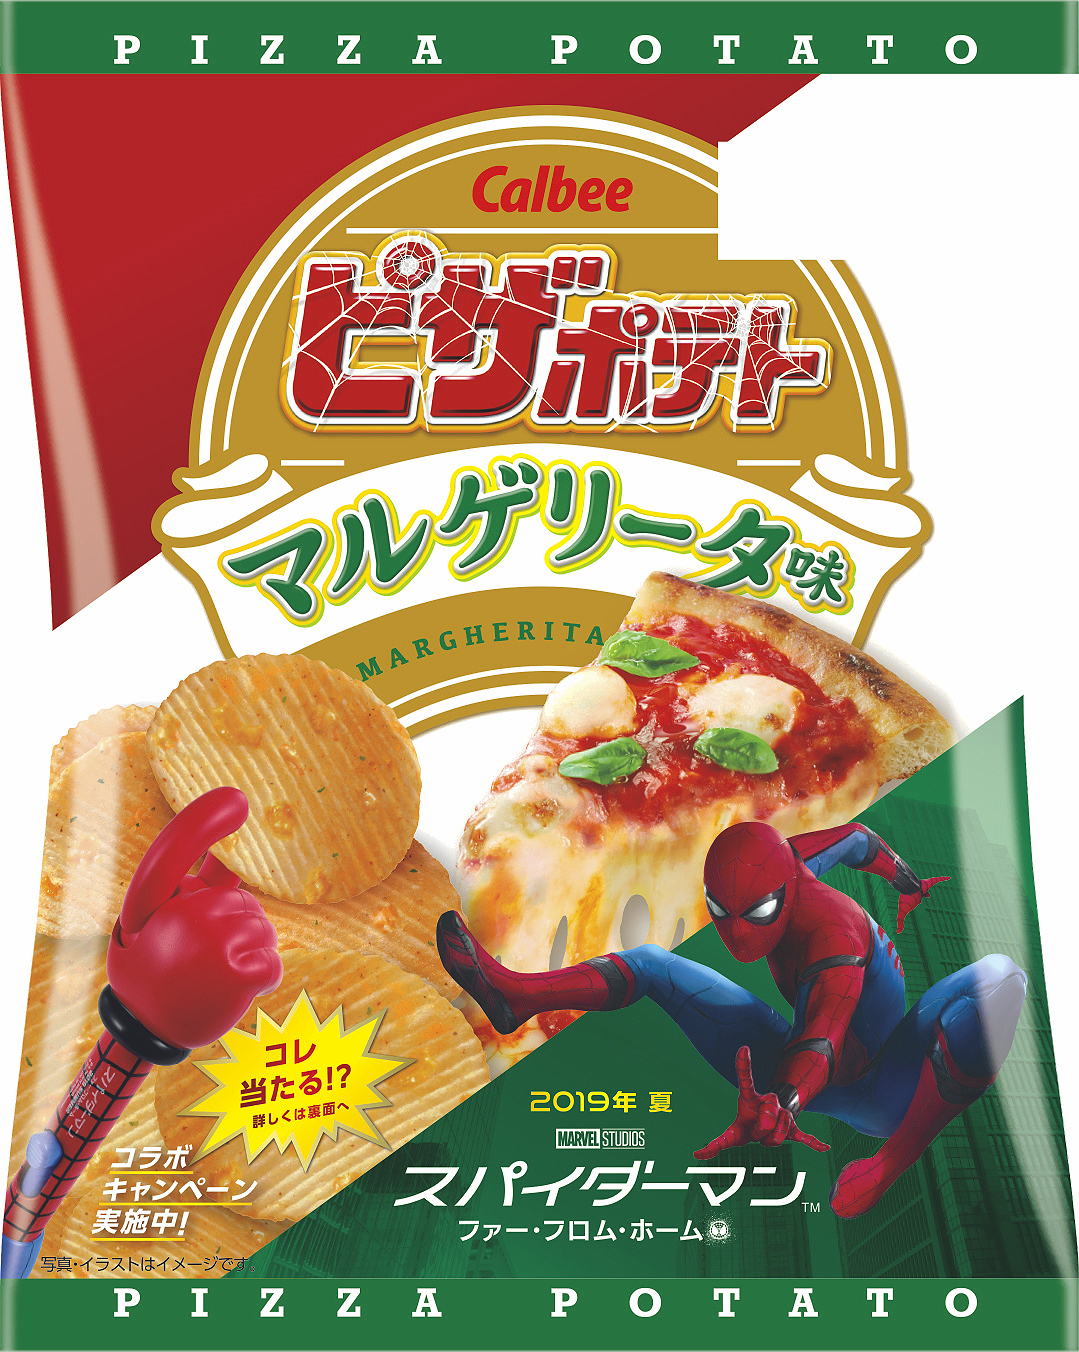 ピザ王道の味を再現 ピザポテト マルゲリータ味 発売 スパイダーマンとのコラボ企画も実施 カルビー株式会社のプレスリリース